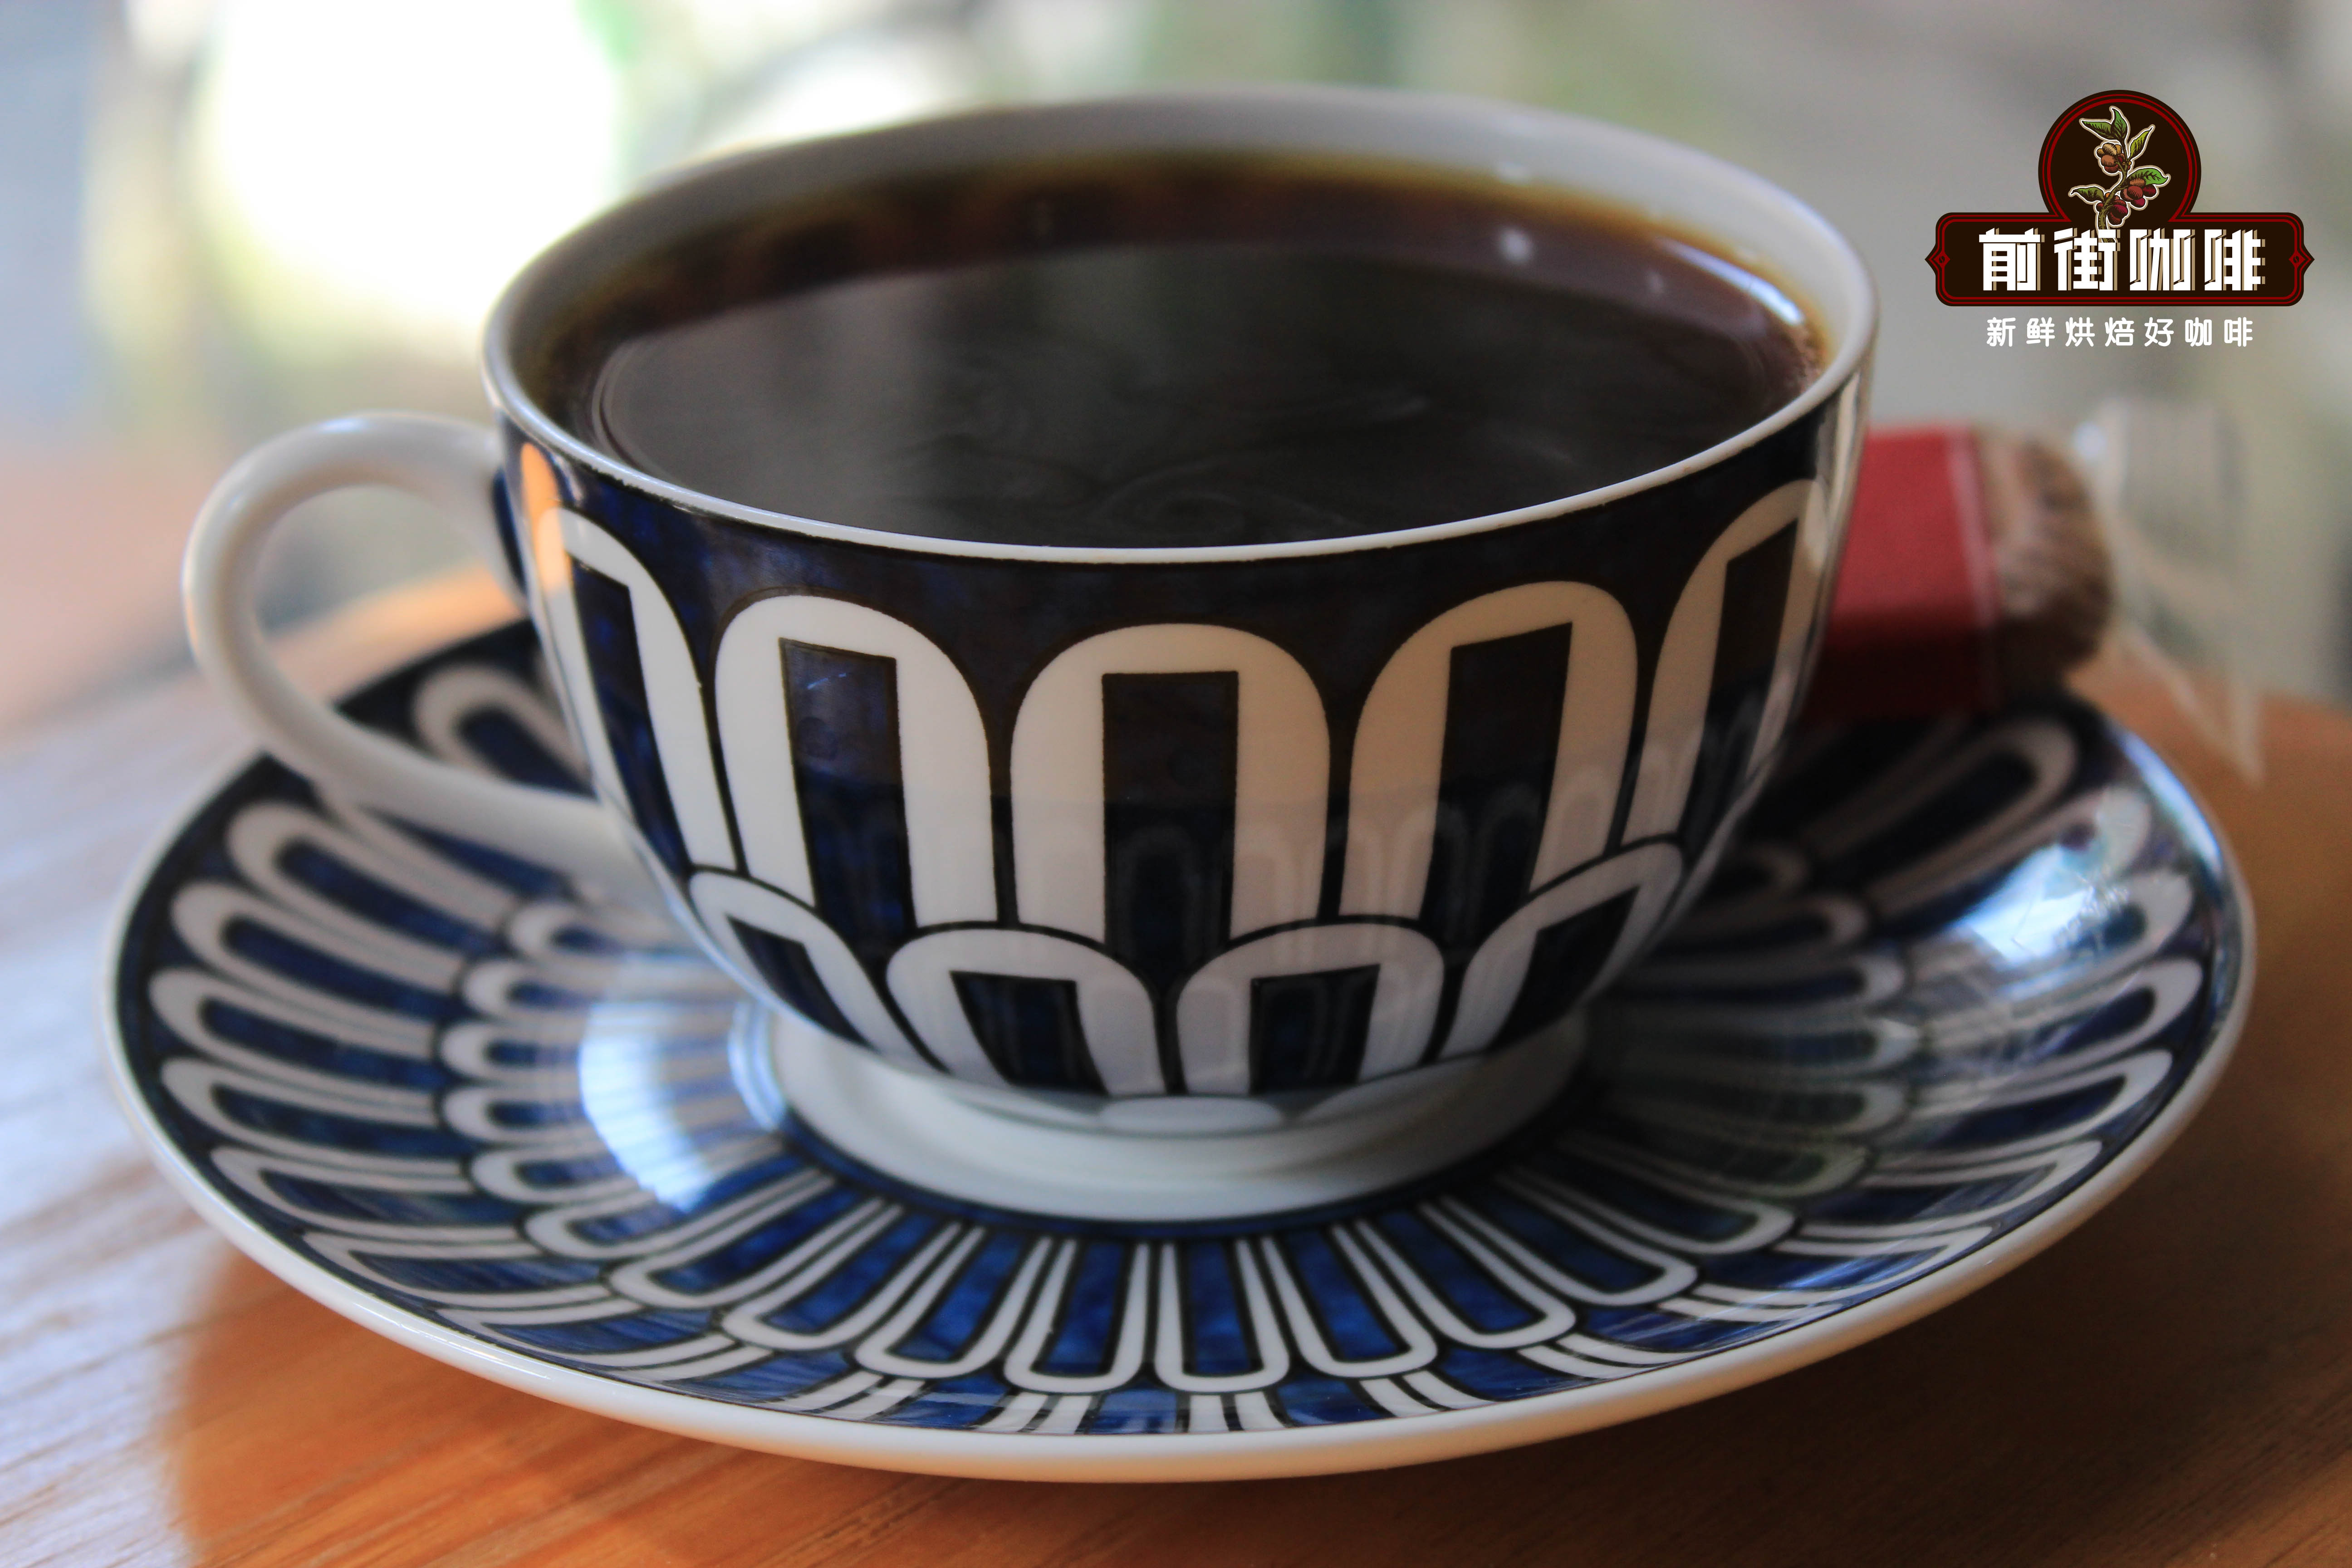 正宗印尼PWN黃金曼特寧與其他曼特寧咖啡豆的外觀口感風味特點區別